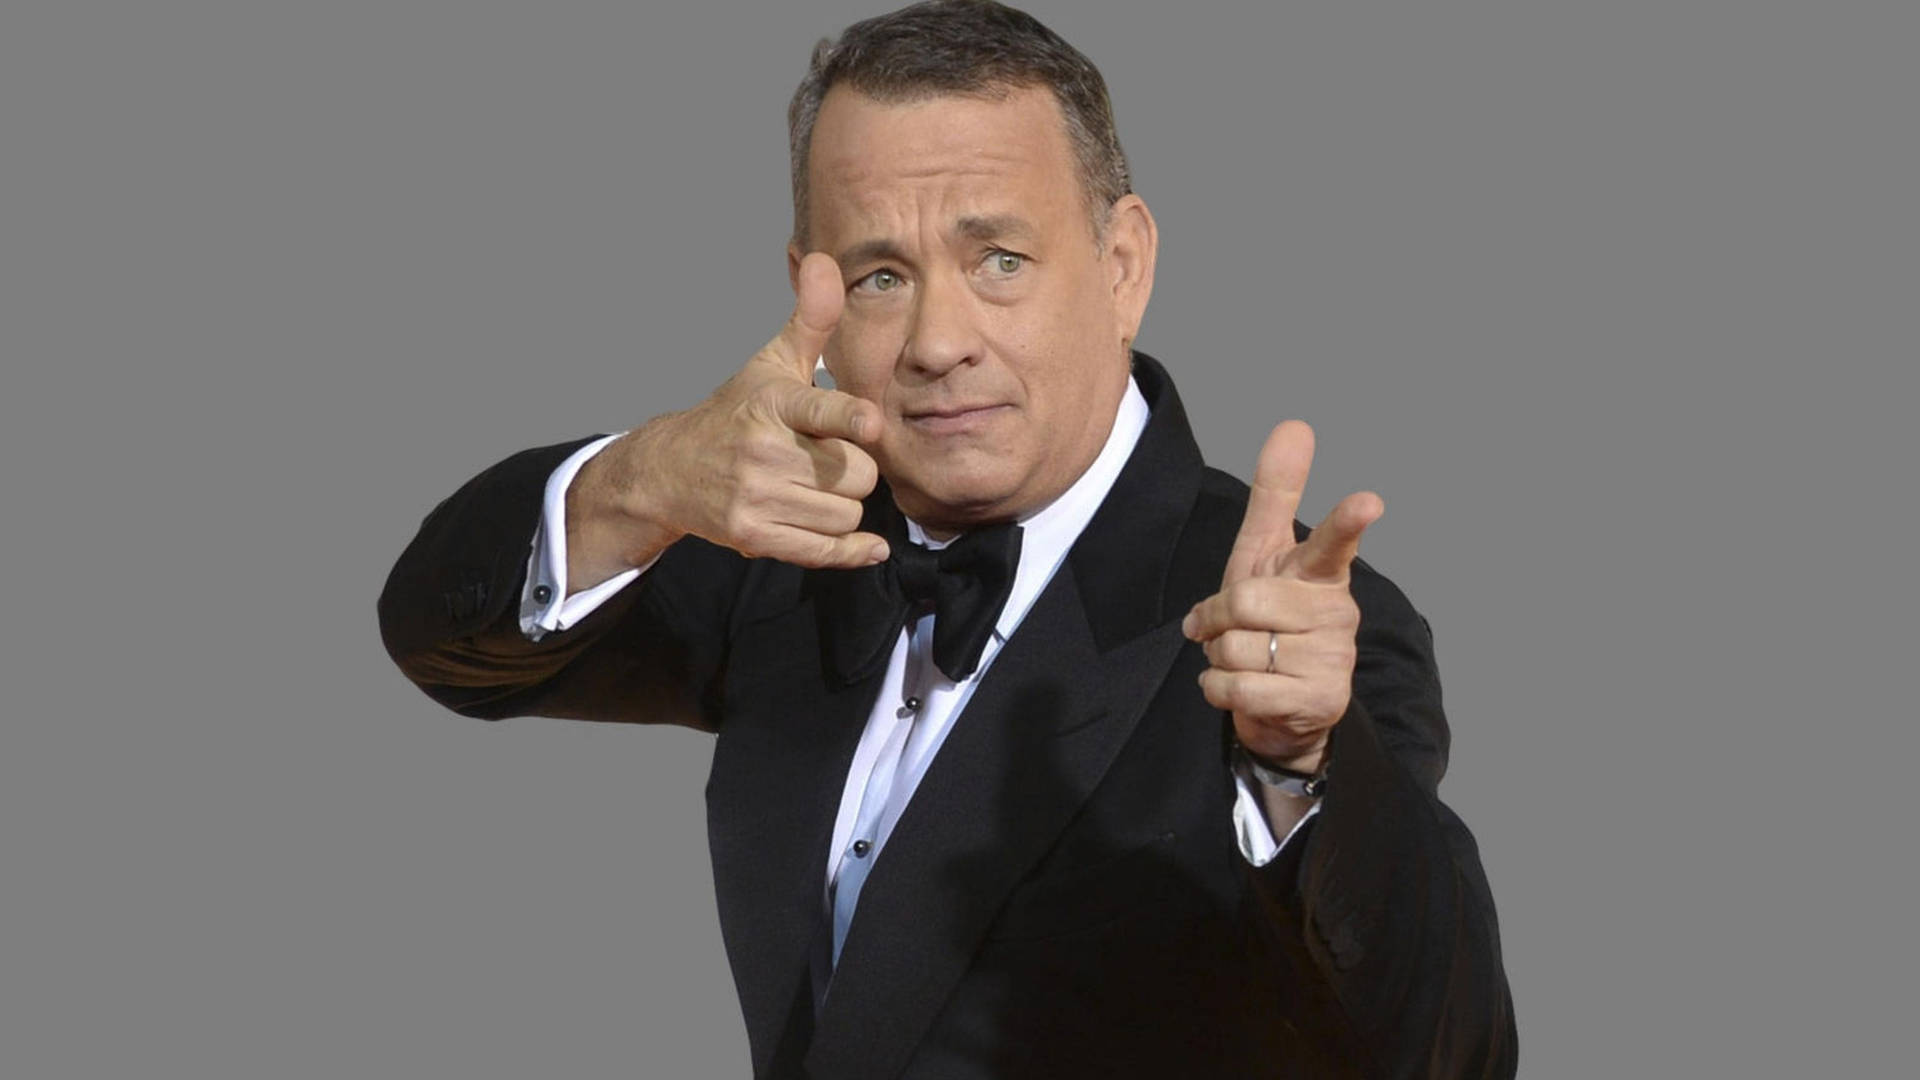 Tom Hanks Hand Gun Gesture Background